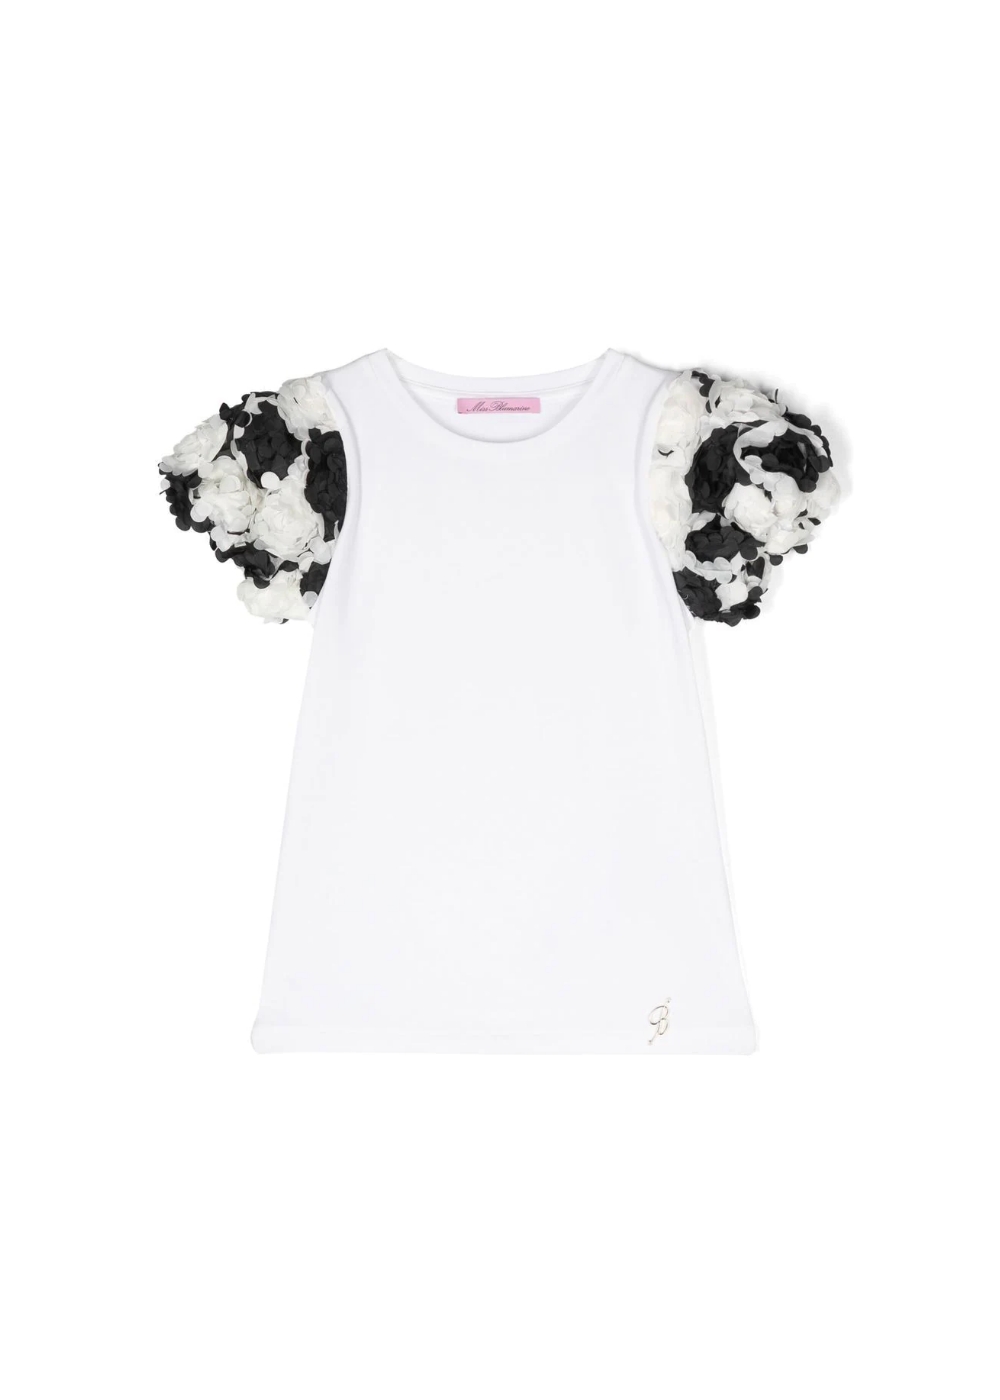 Featured image for “Blumarine T-shirt con dettaglio a fiori”